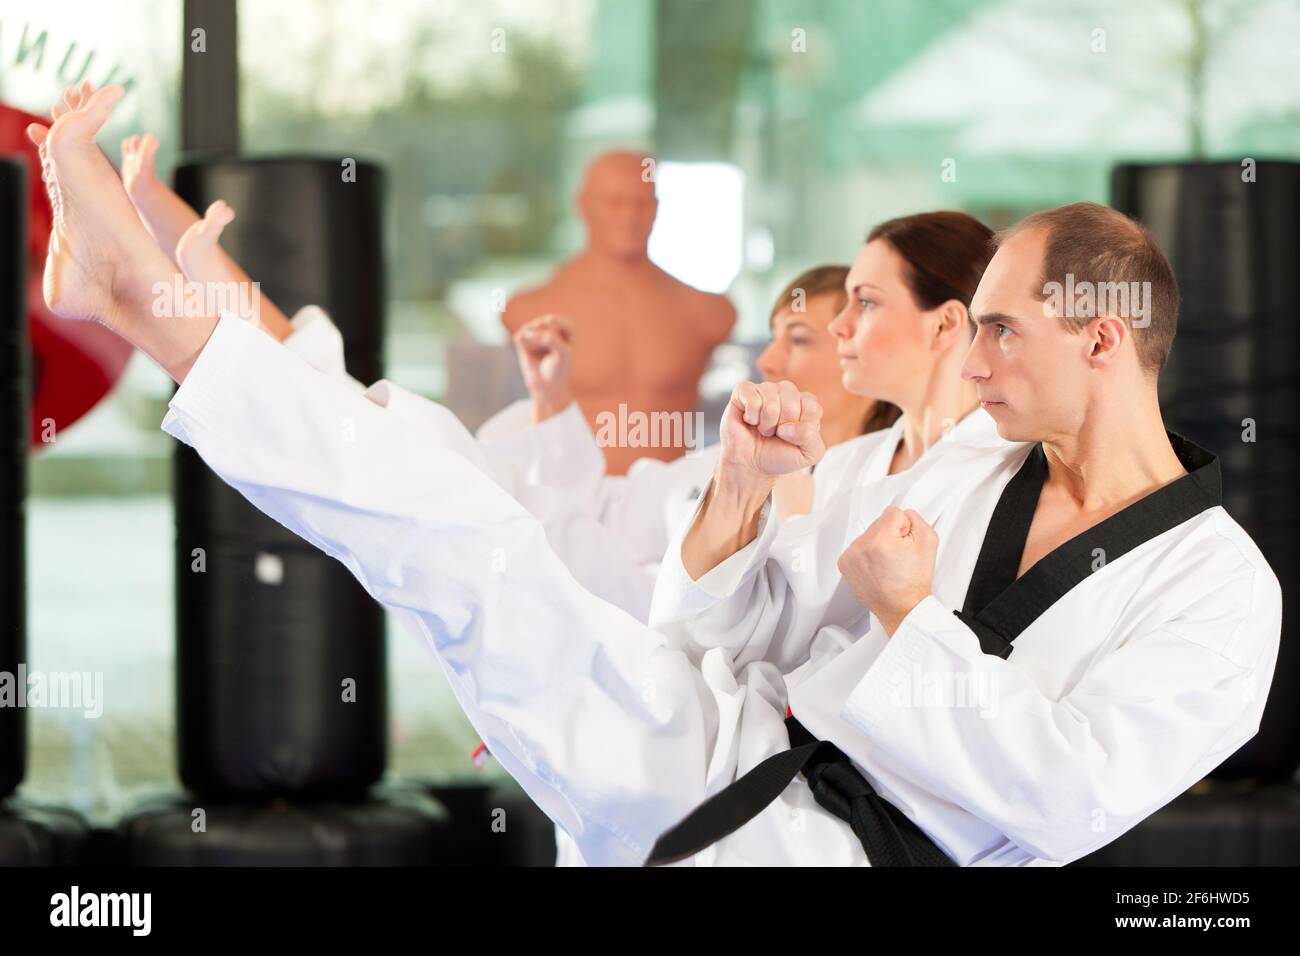 Leute im Fitnessstudio beim Training von Kampfsport, es geht um Taekwondo, der Trainer hat den schwarzen Gürtel Stock Photo